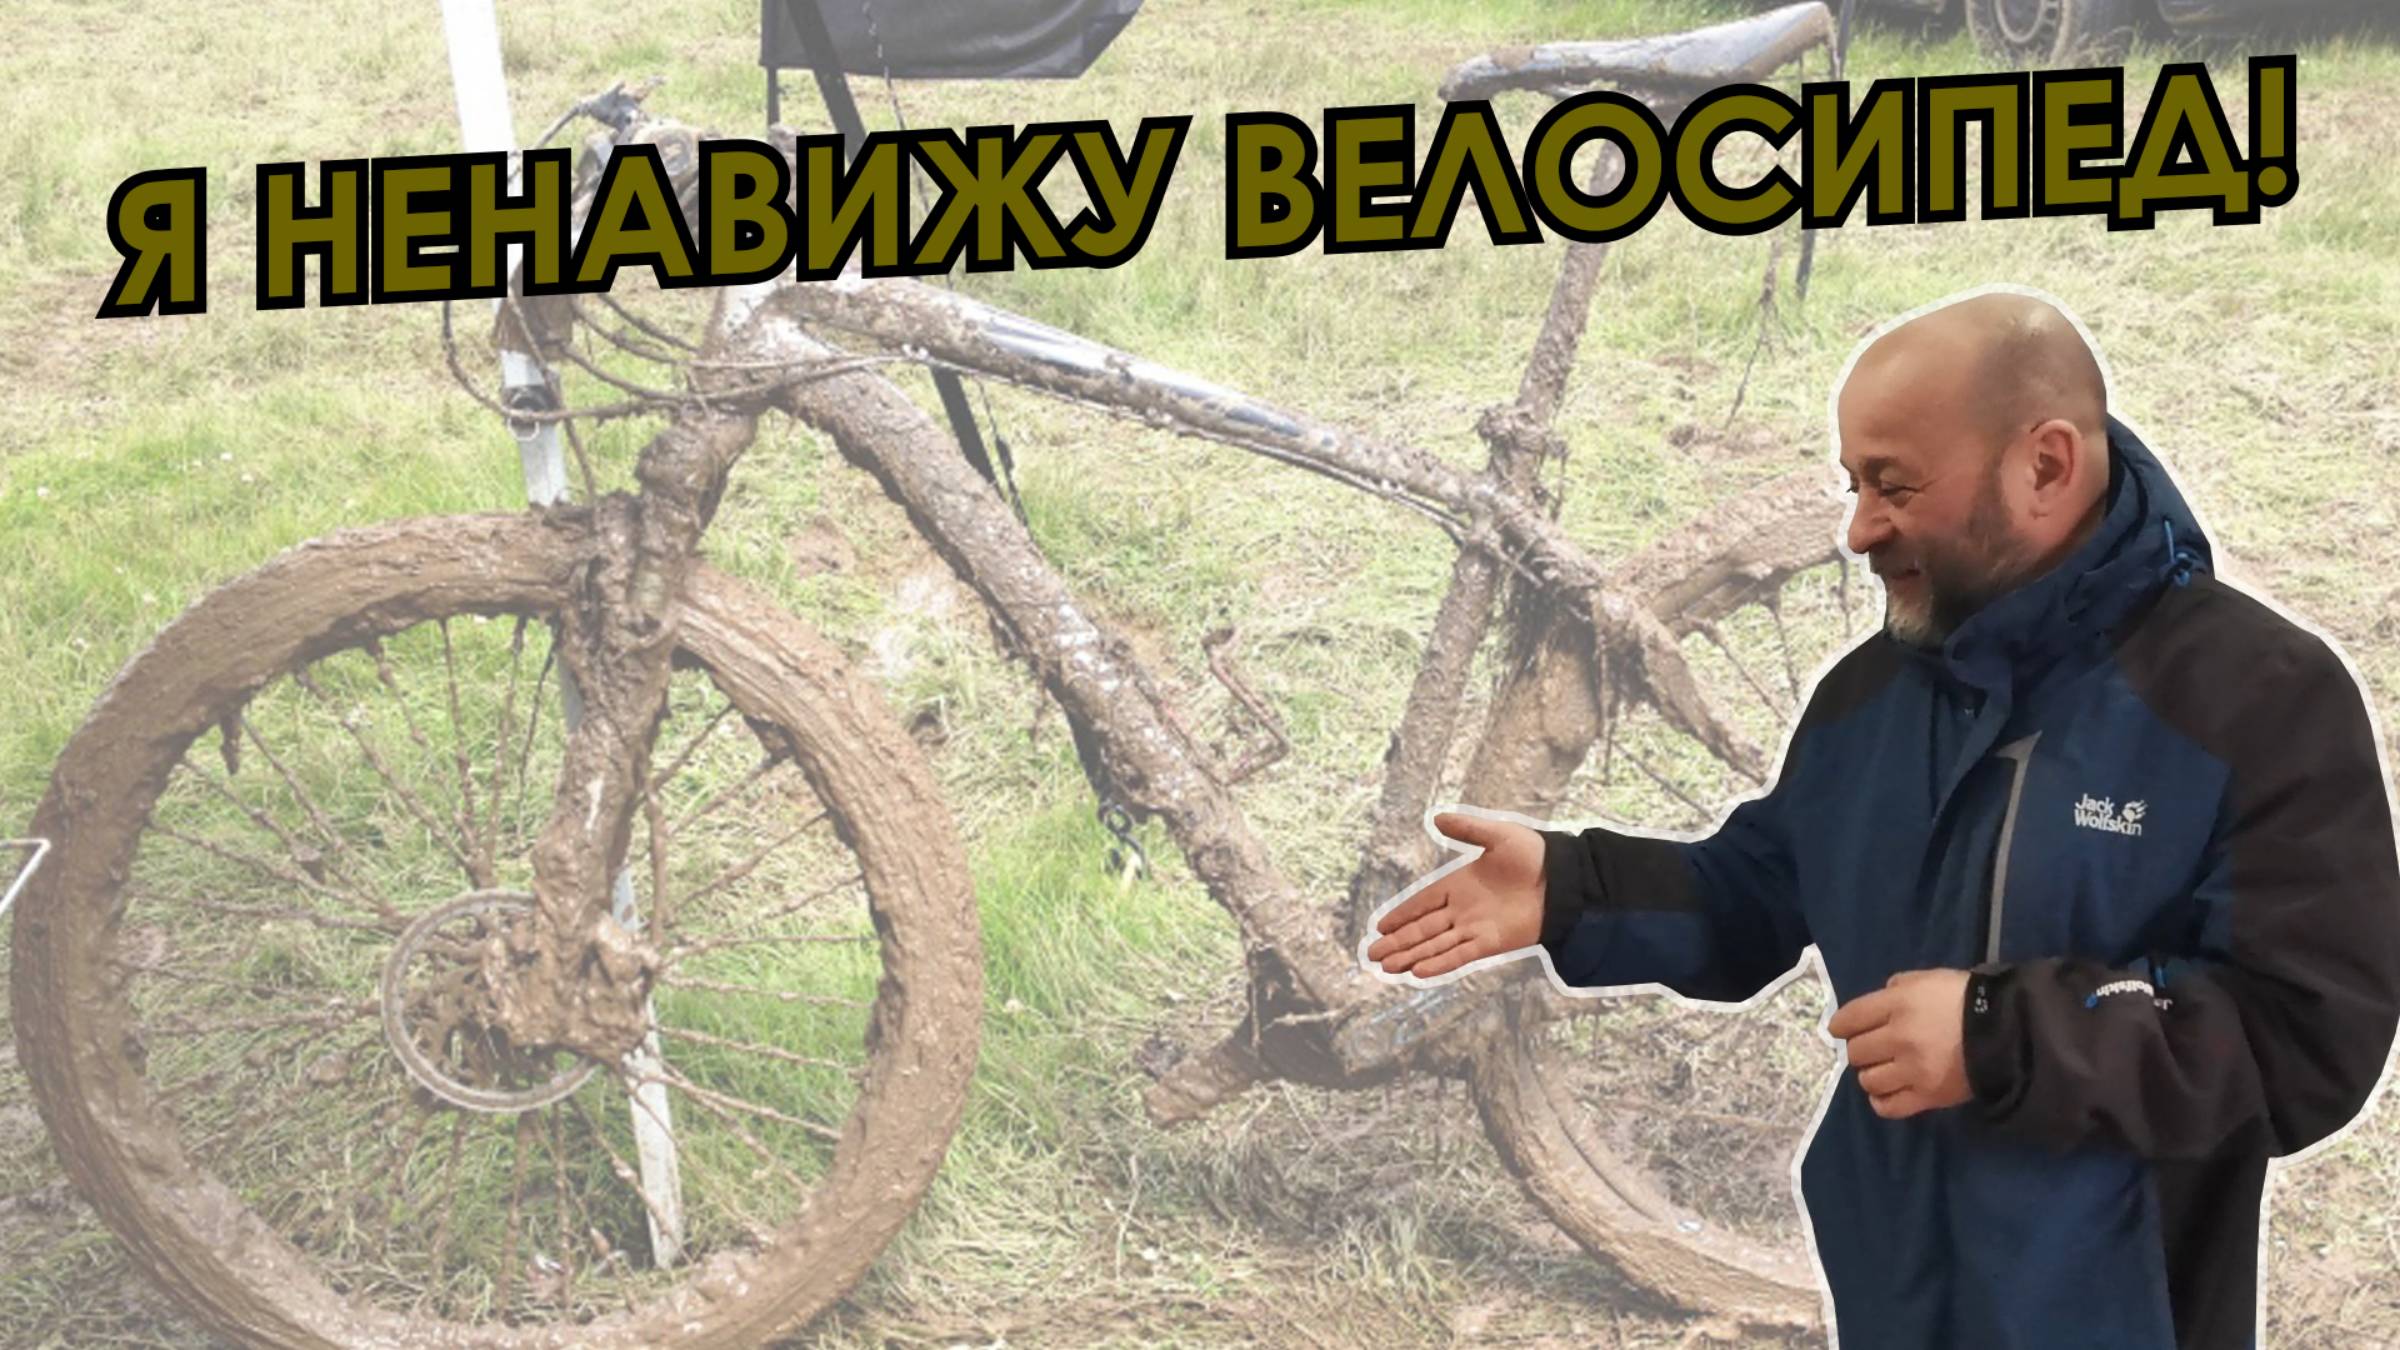 Почему житель Якутска ненавидит велосипед?